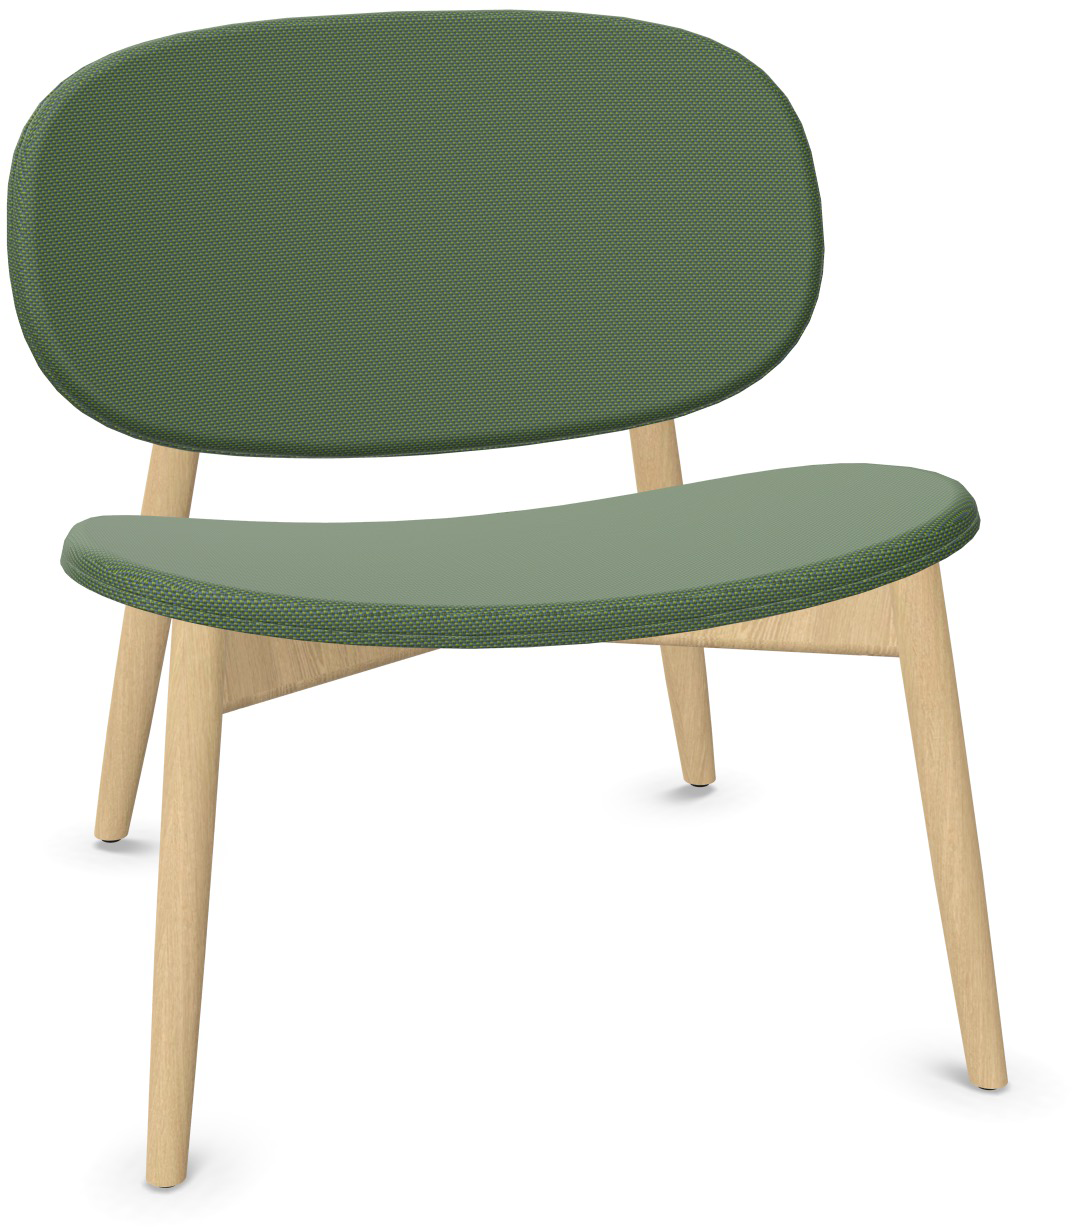 HARMO Relaxsessel in Dunkelgrün präsentiert im Onlineshop von KAQTU Design AG. Sessel ist von Infiniti Design